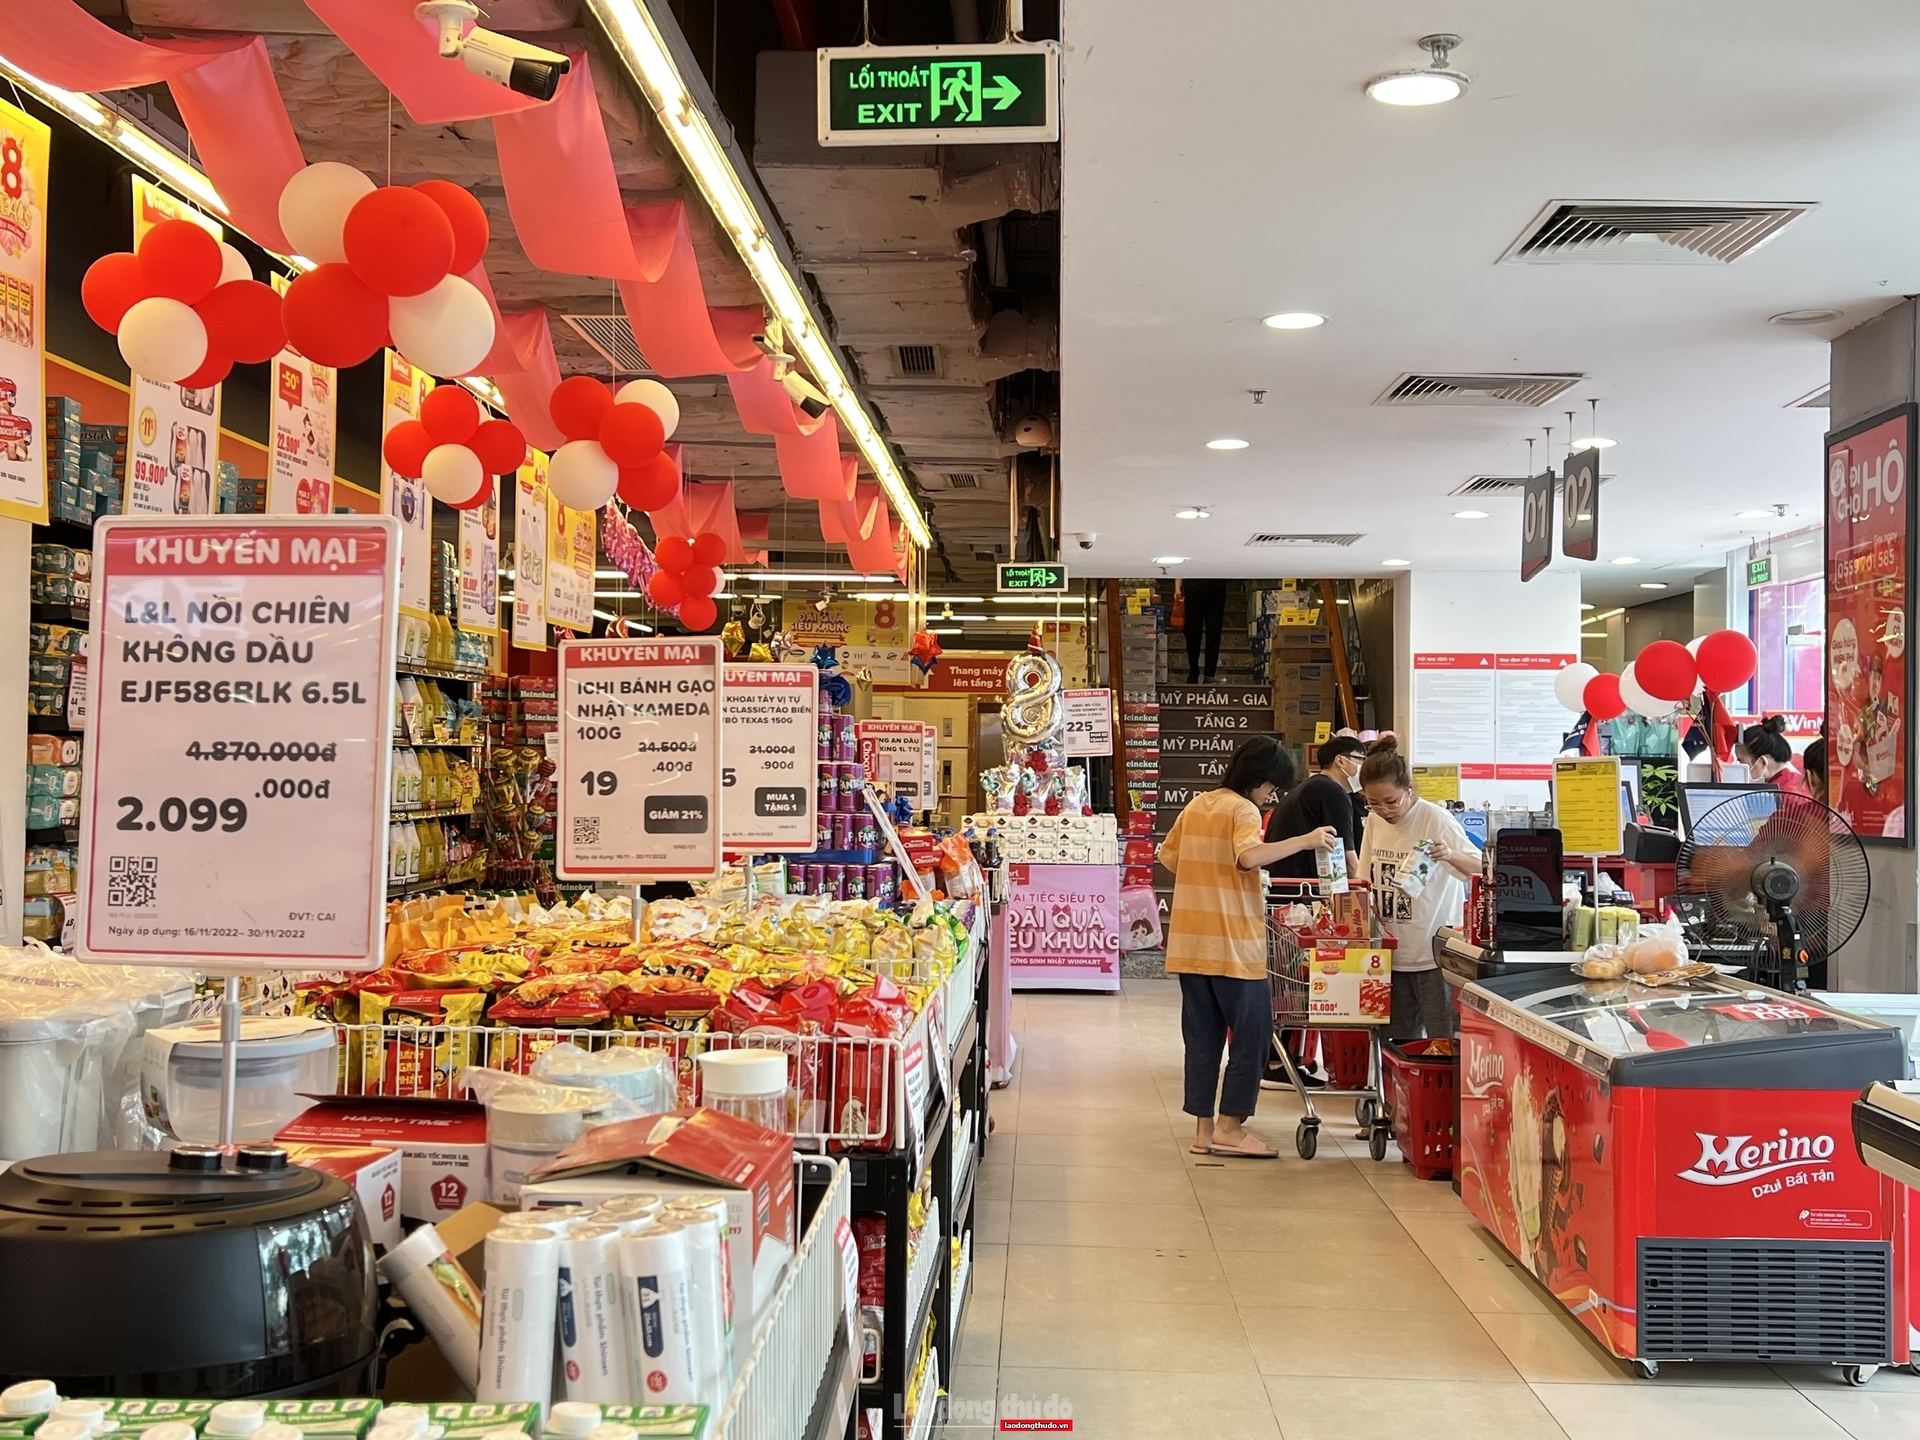 Để tăng hiệu quả hoạt động ngay tại thị trường nội địa, doanh nghiệp Việt cần chủ động đa dạng hóa sản phẩm và giá cạnh tranh. Ảnh: Lao động thủ đô